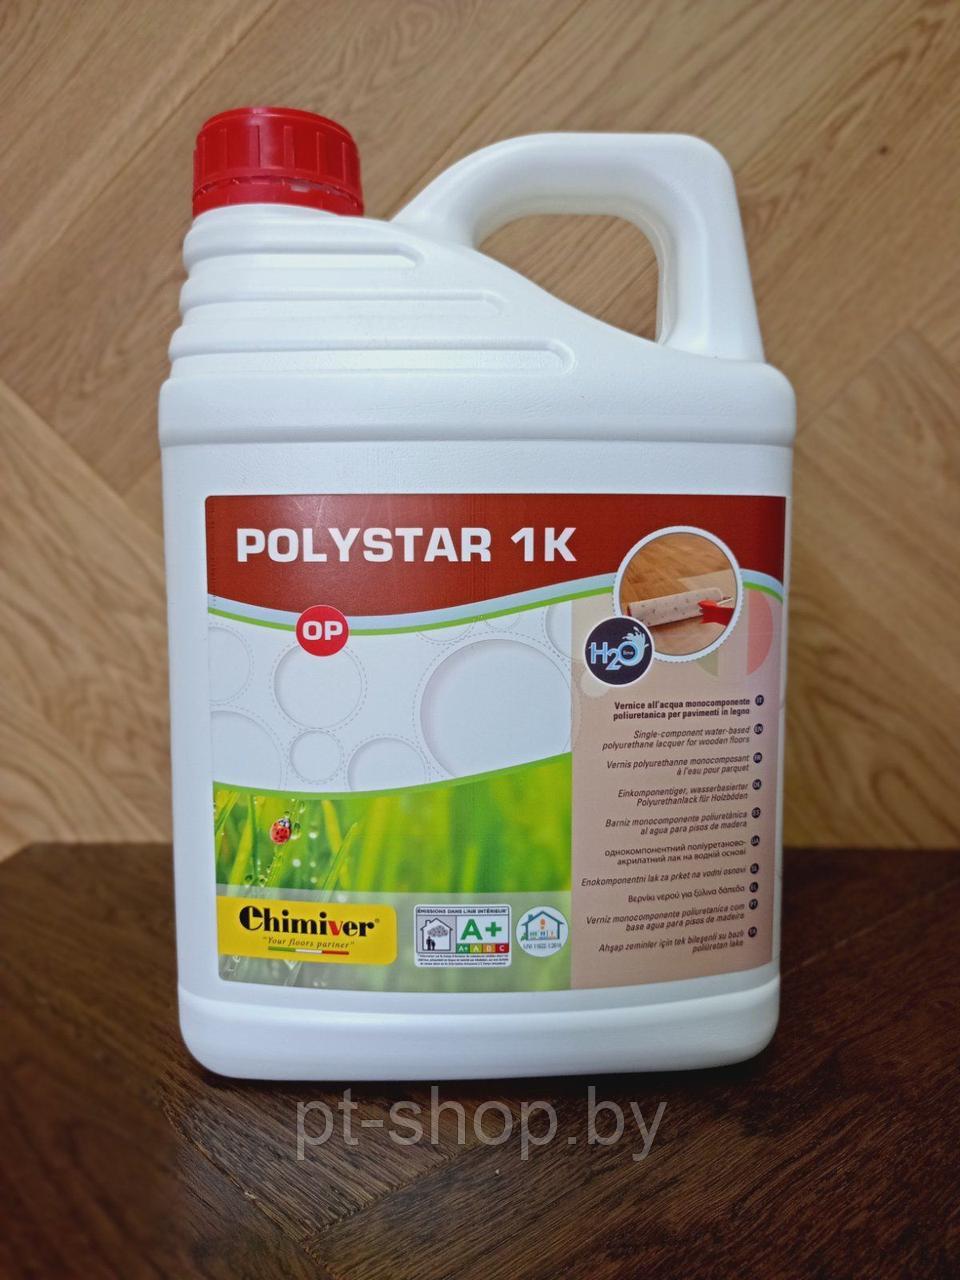 Однокомпонентный, водно-полиуретановый лак Polystar 1K OP (Полистар 1К матовый)  5л